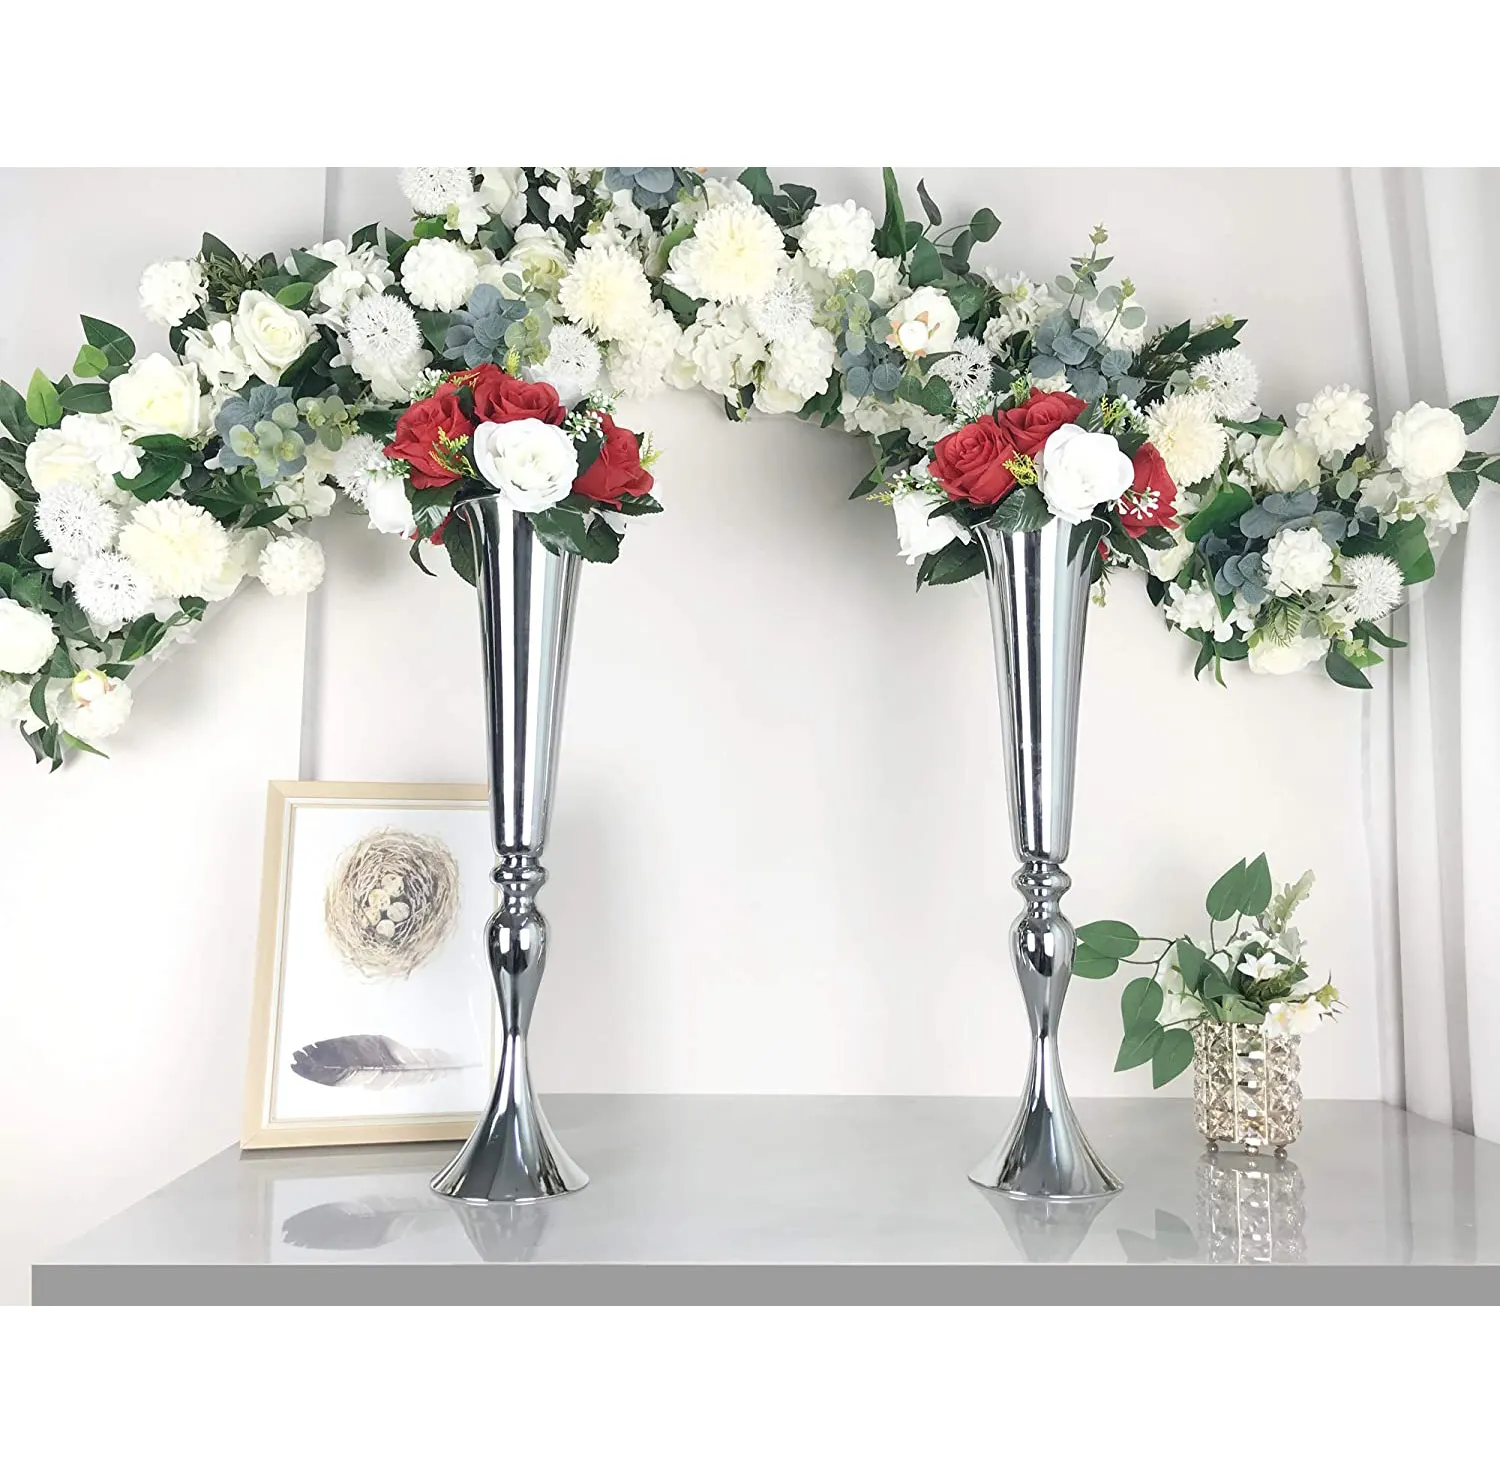 Vas bunga logam dekorasi meja, vas bunga perak untuk tengah meja pernikahan pesta resepsi acara dekorasi ulang tahun